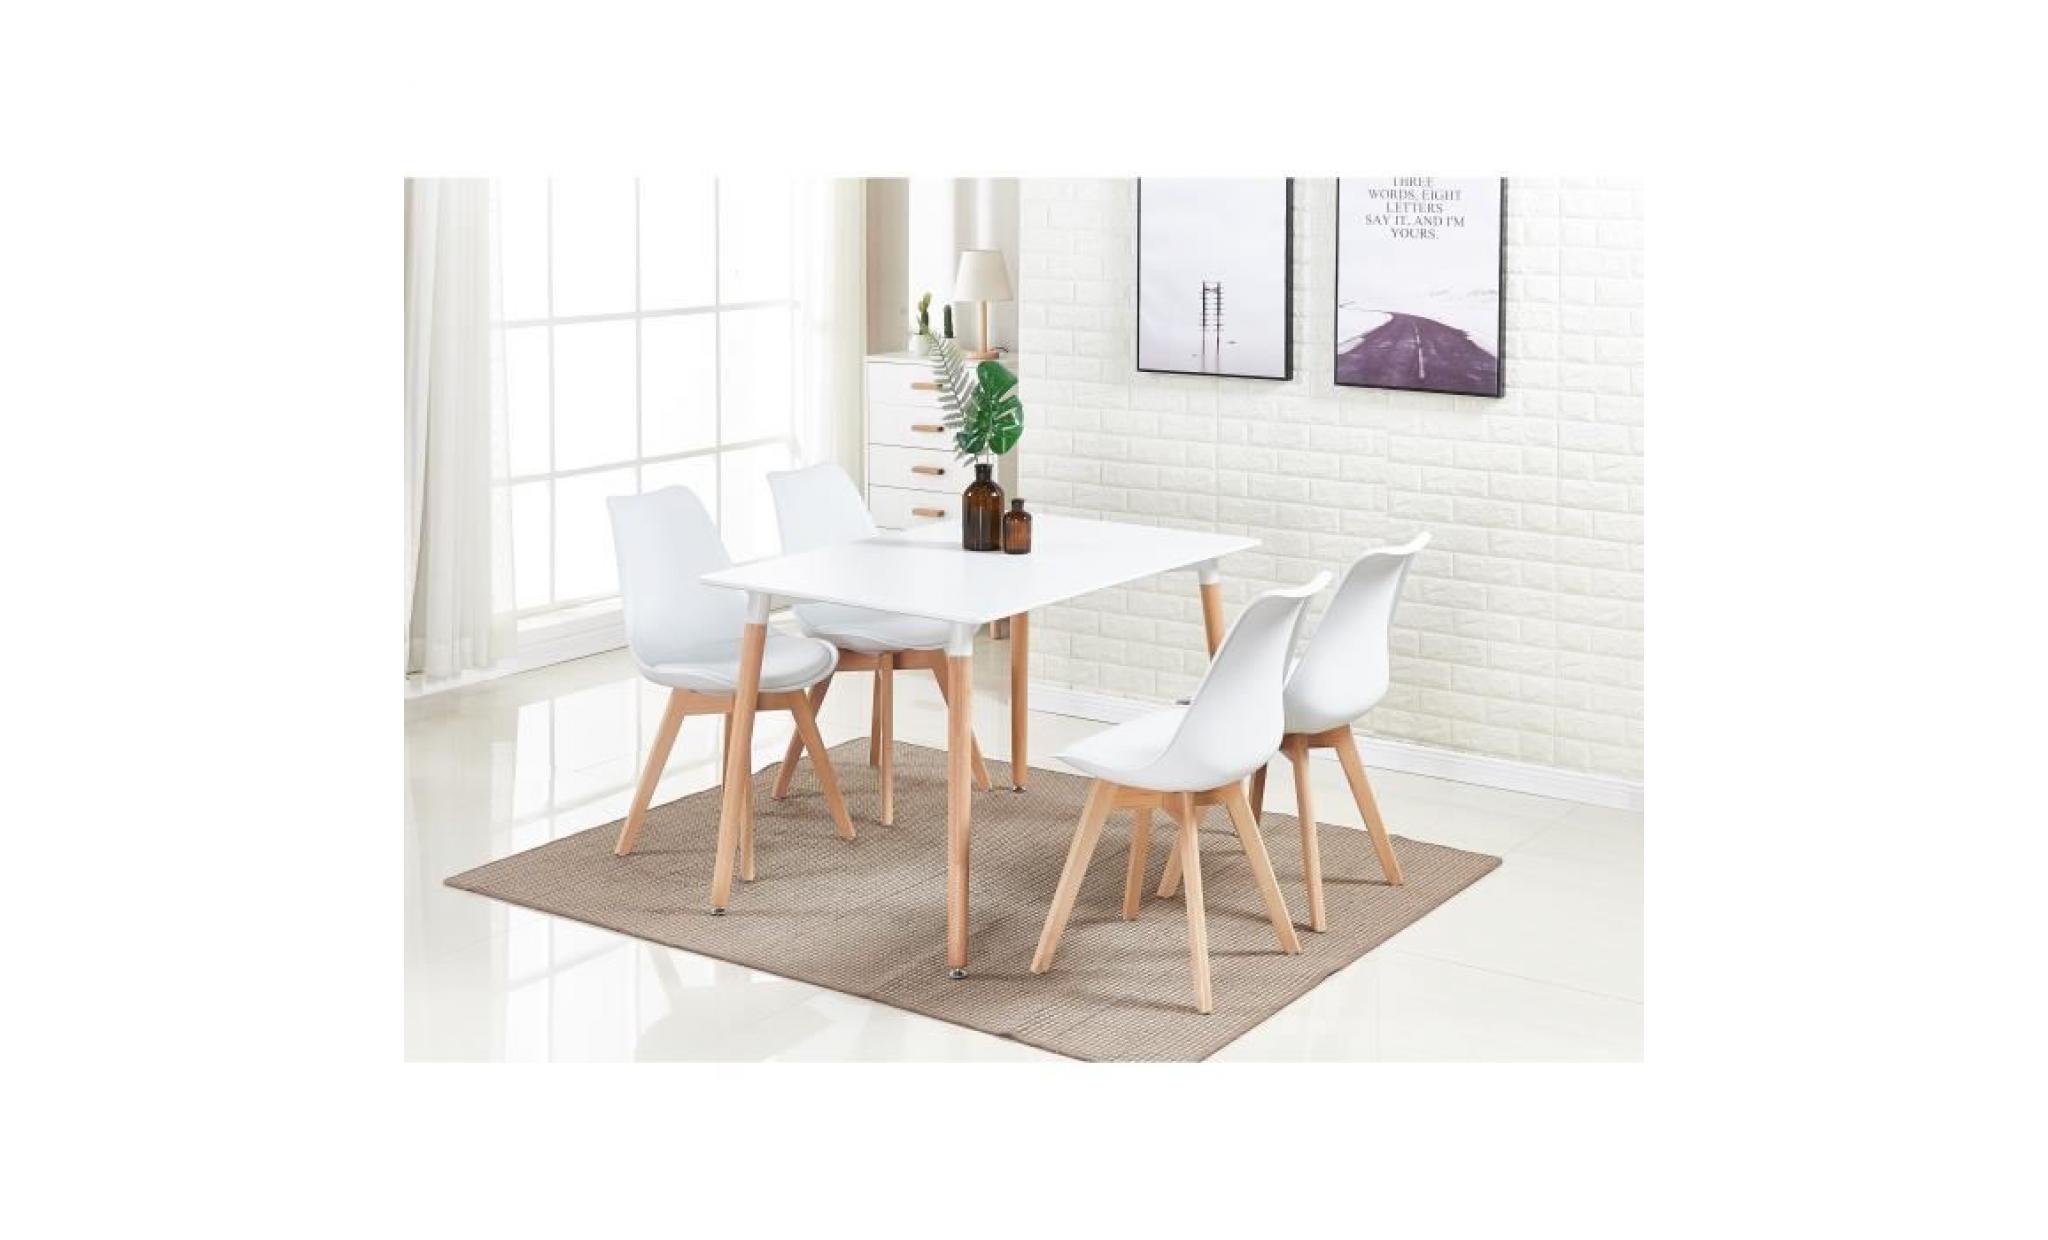 ensemble table de salle à manger complet   table blanche + 4 chaises blanches   design scandinave   cuisine, salon, bureau